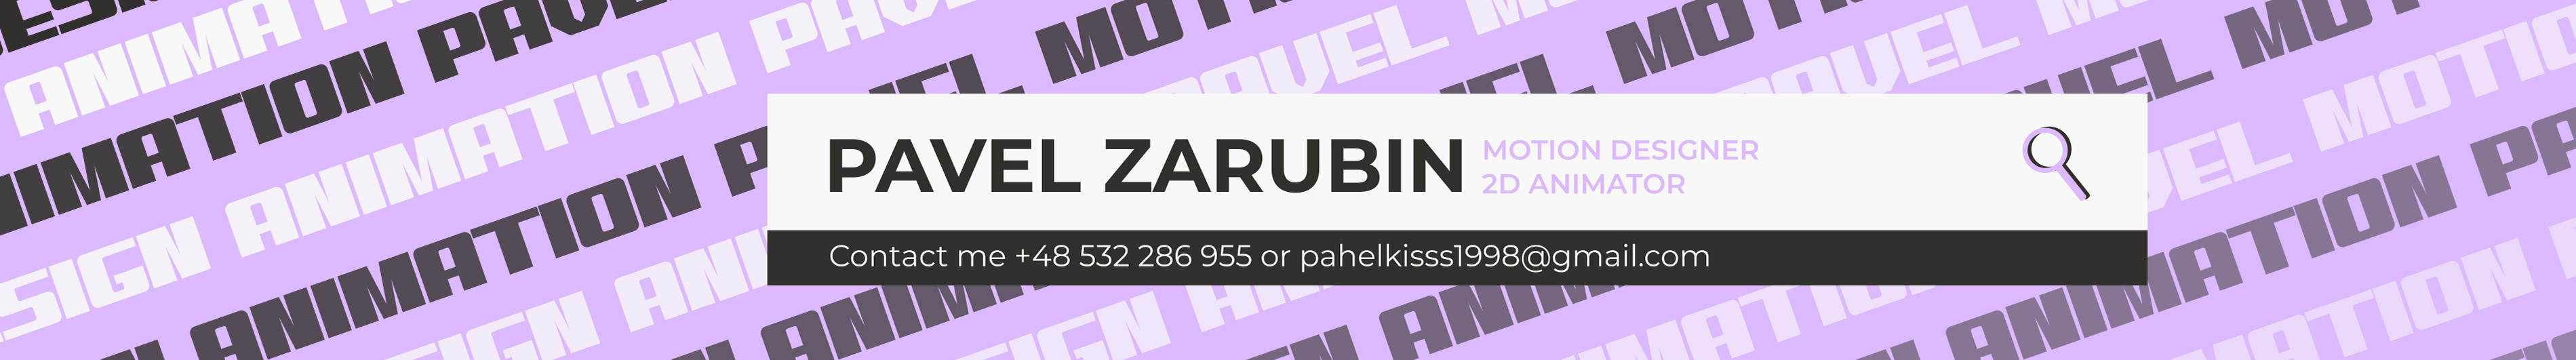 Pavel Zarubin profil başlığı